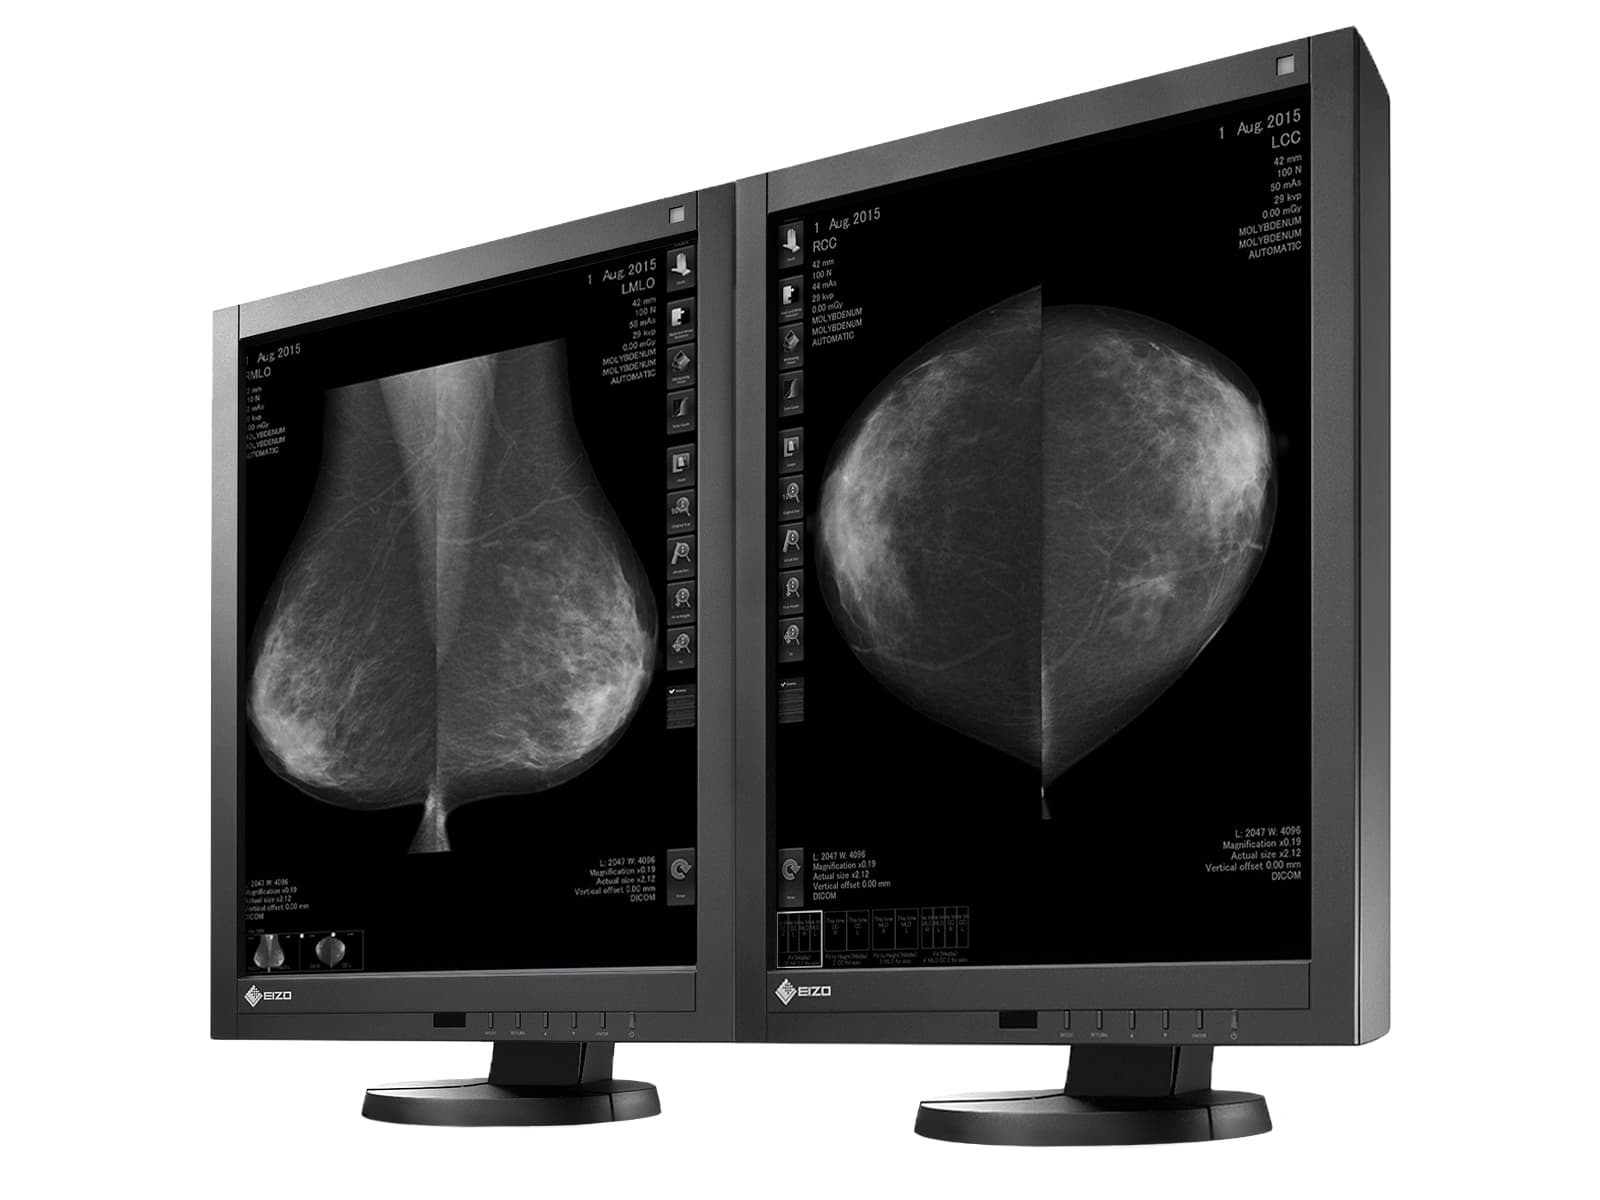 Eizo RadiForce GX540 5MP 21" Grayscale LED Digital Mammography 3D-DBT Display (GX540-CL)